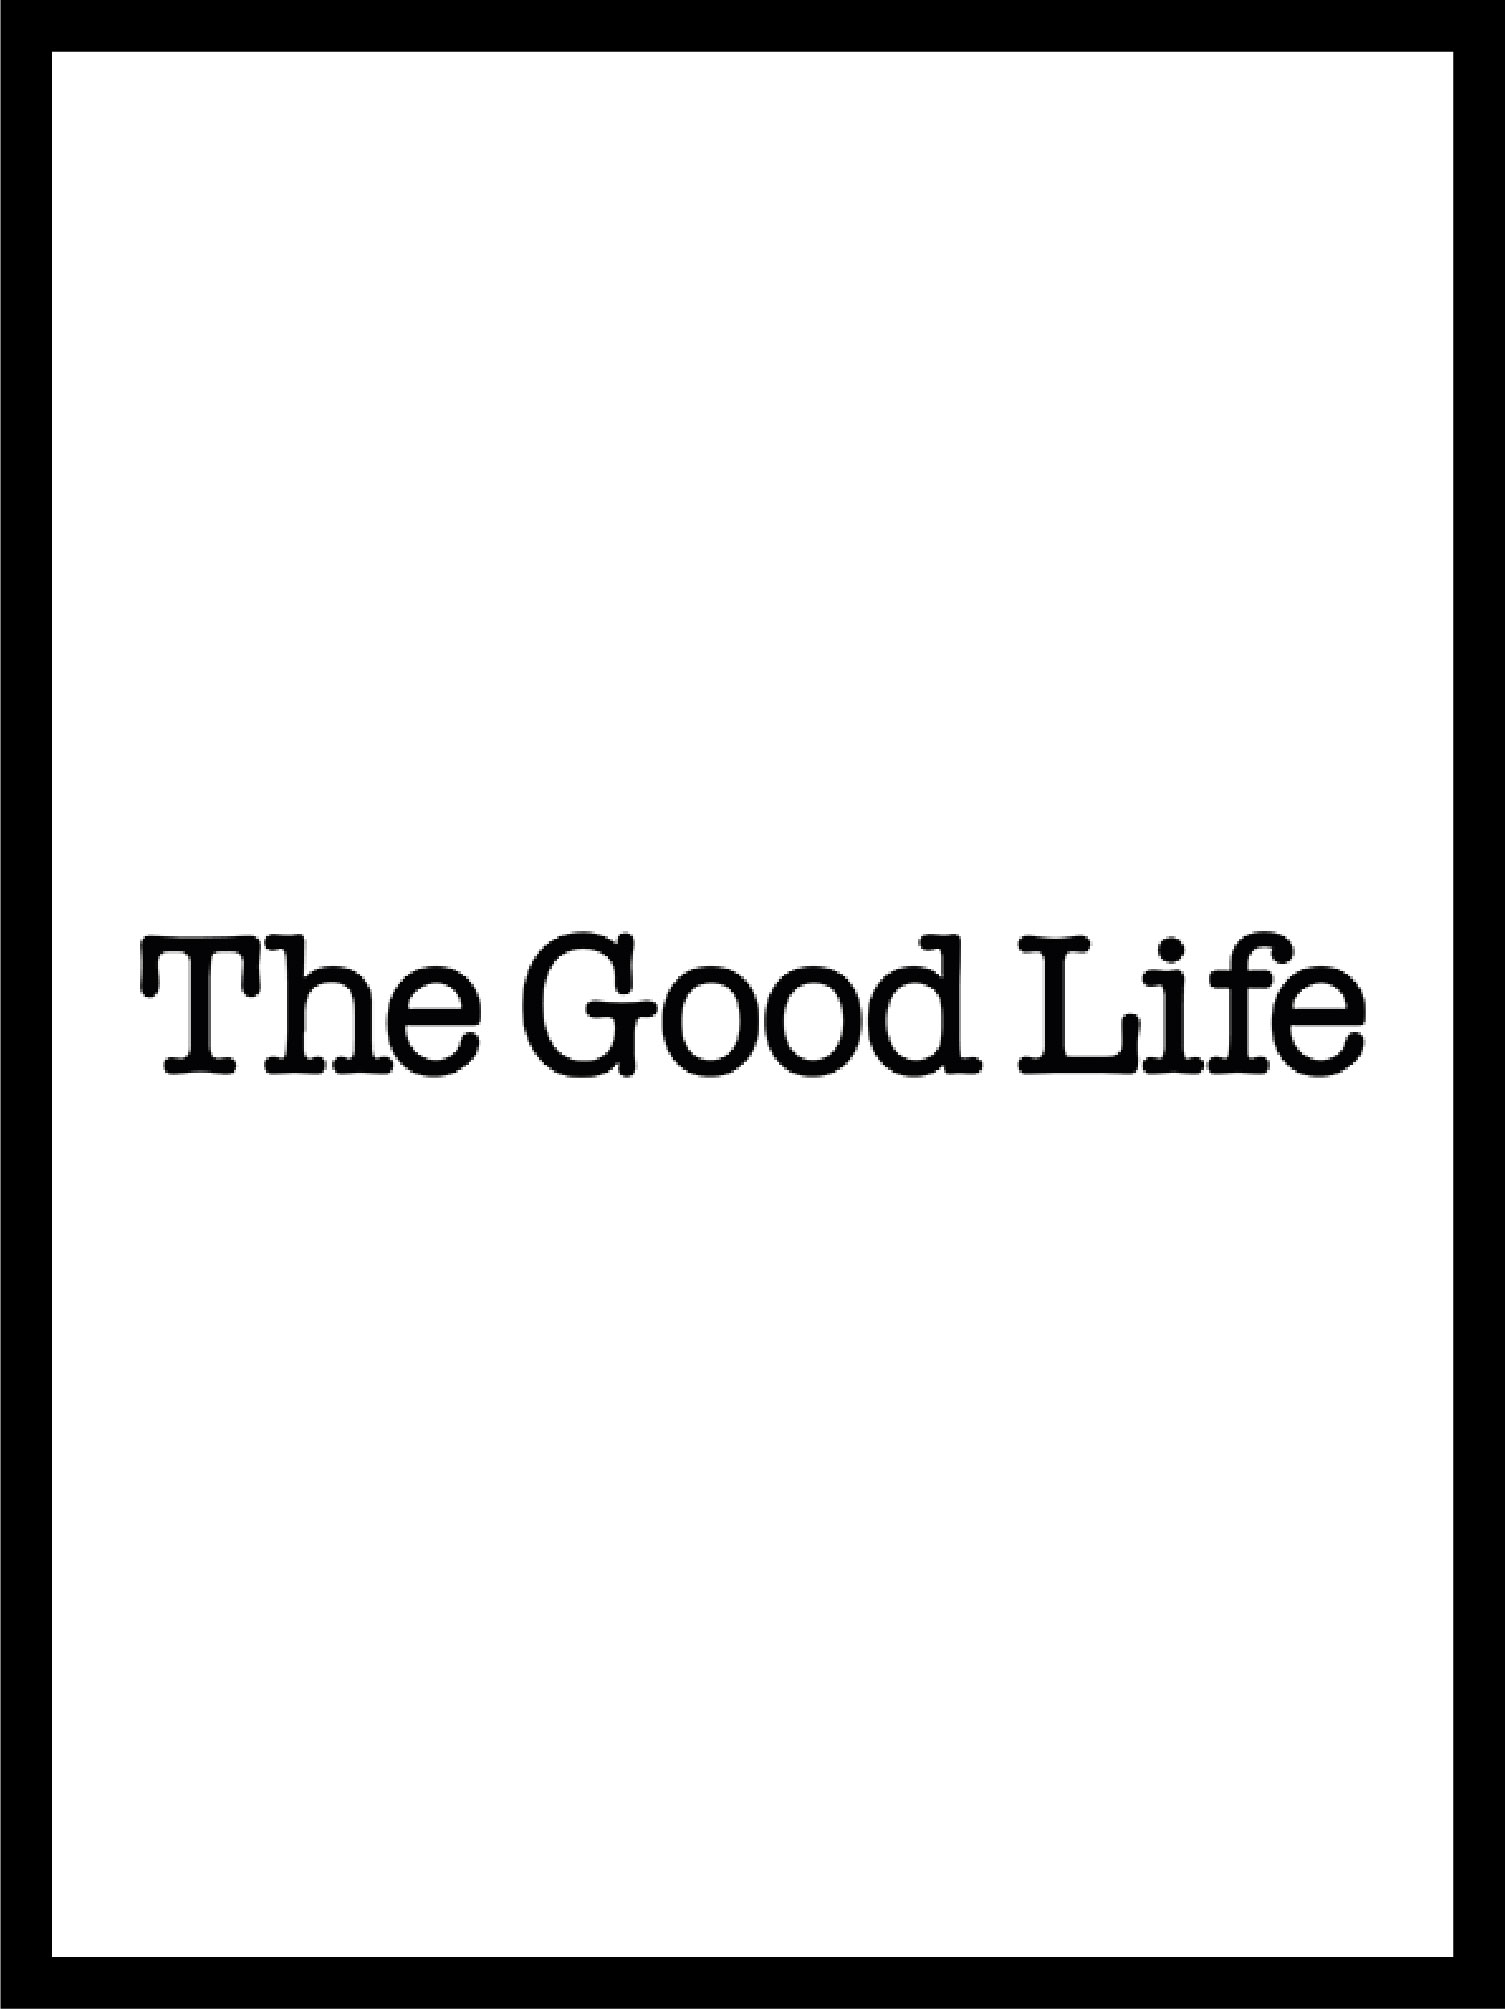 couverture et logo du magazine the good life